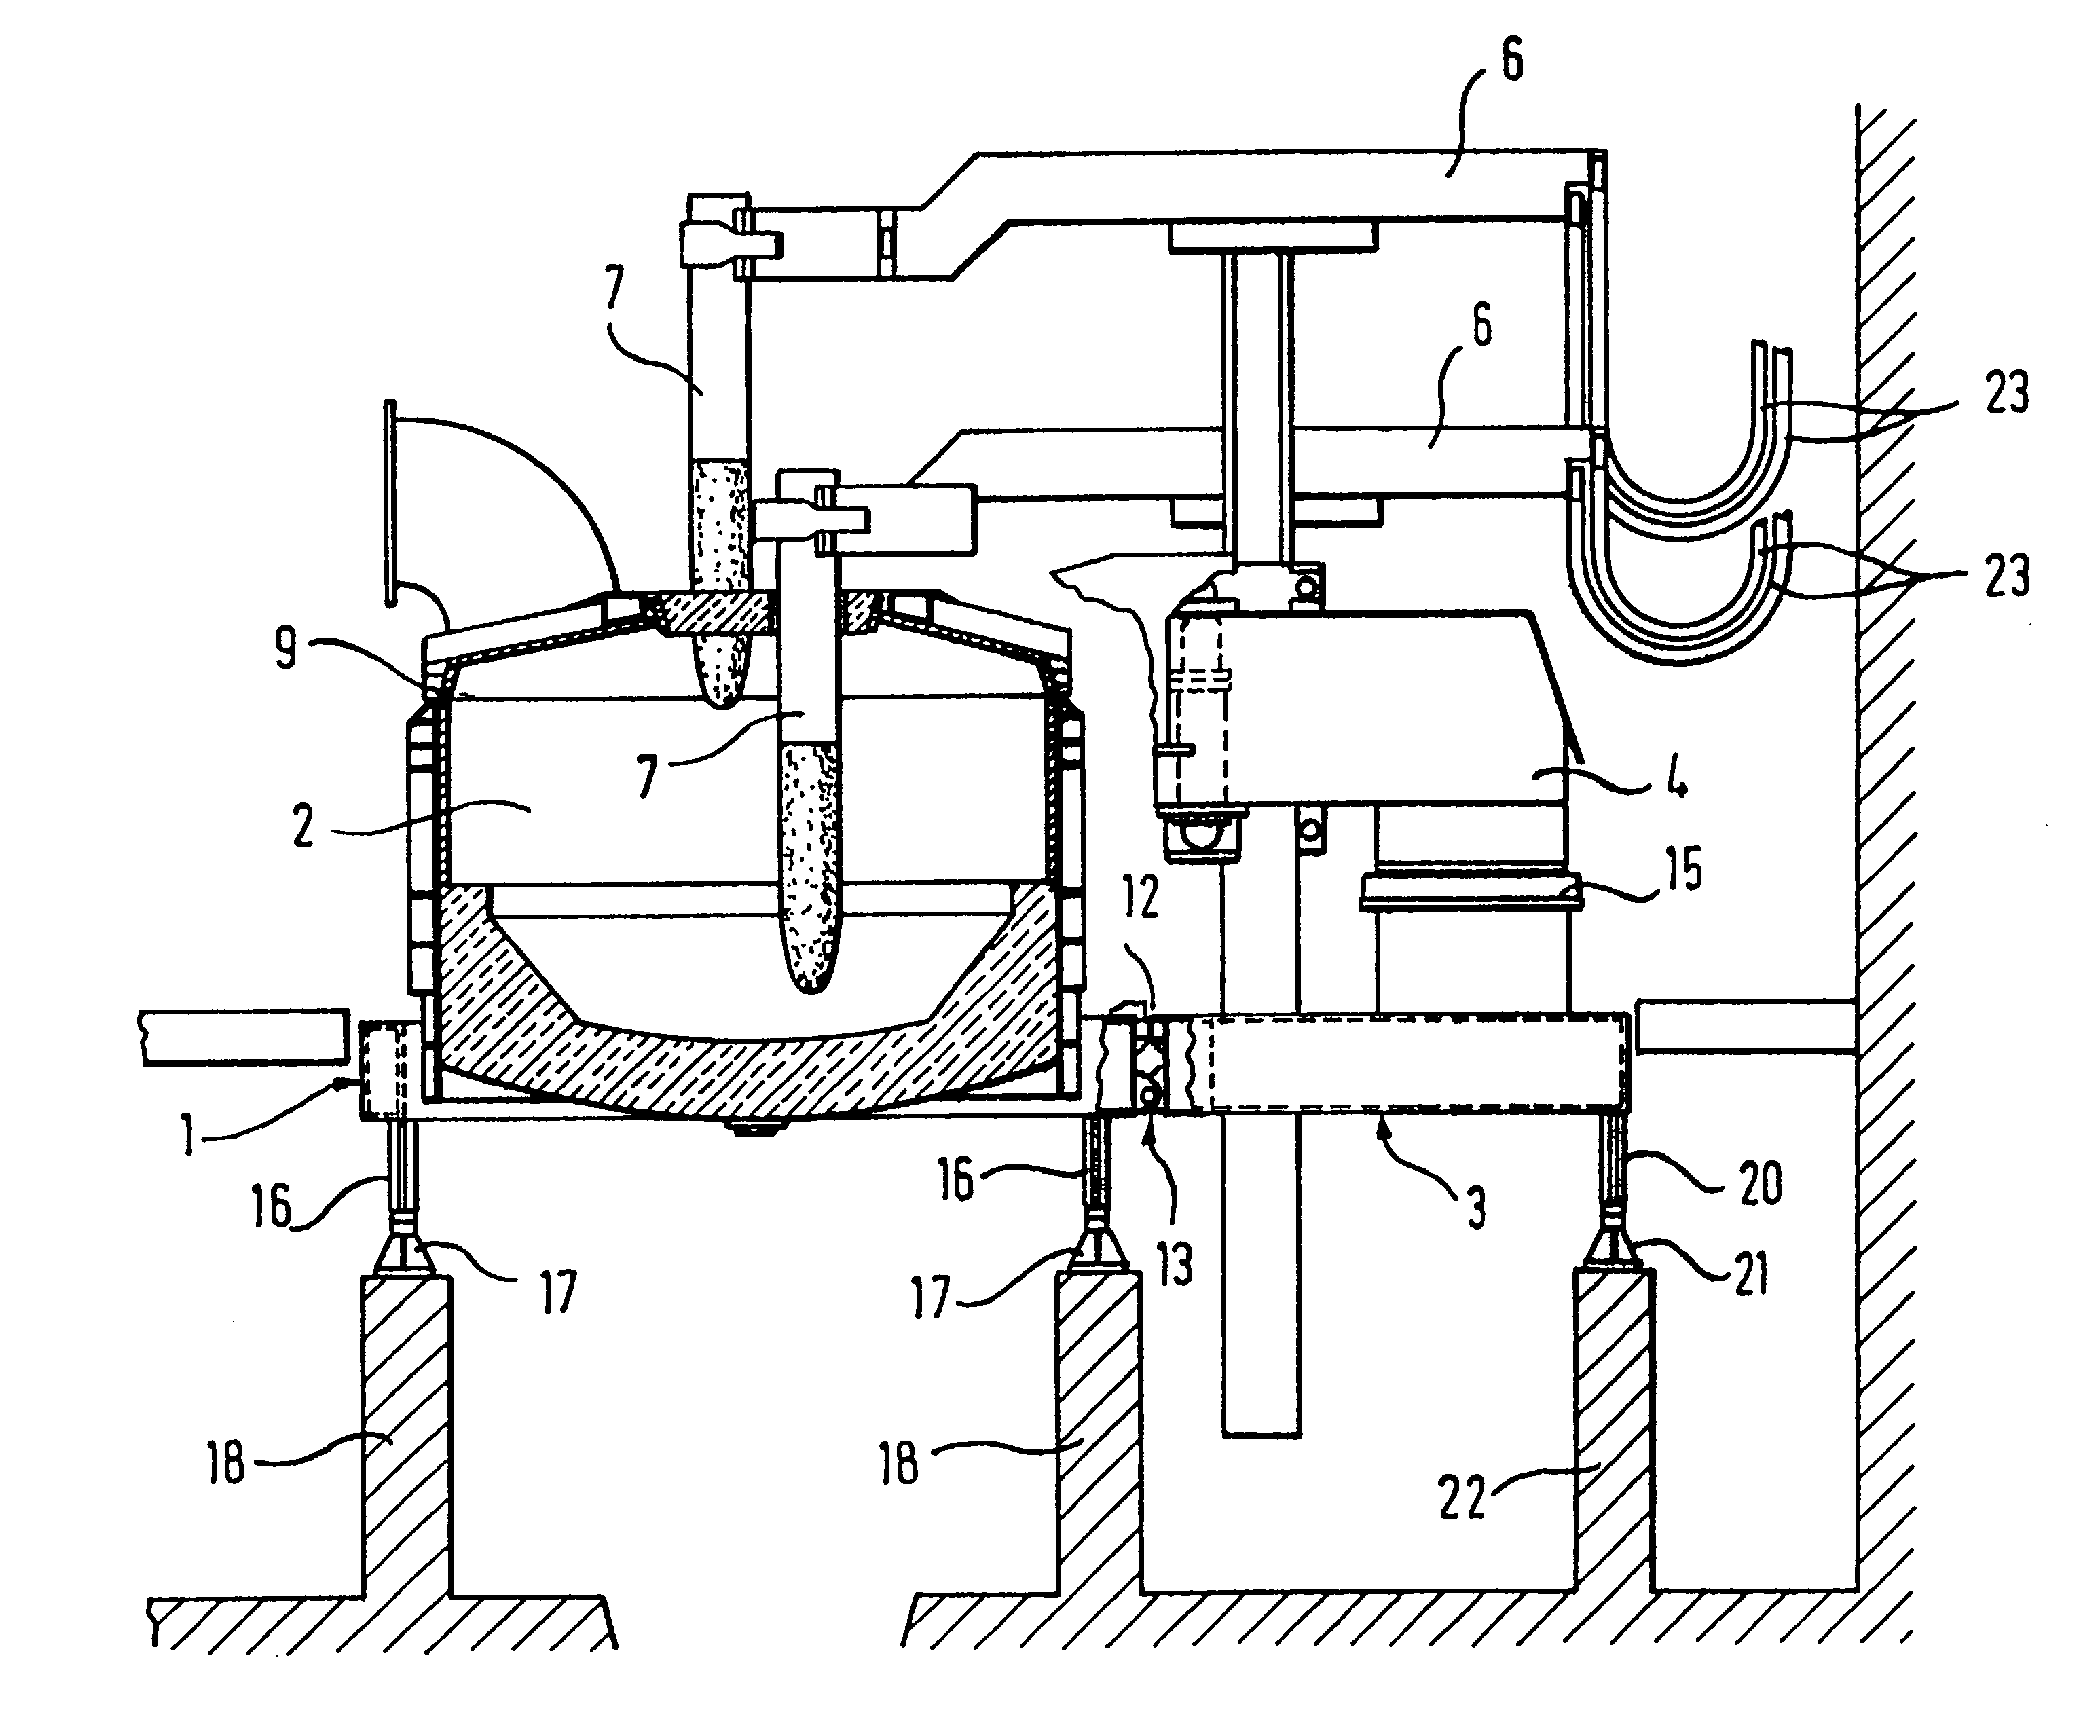 Tiltable arc furnace